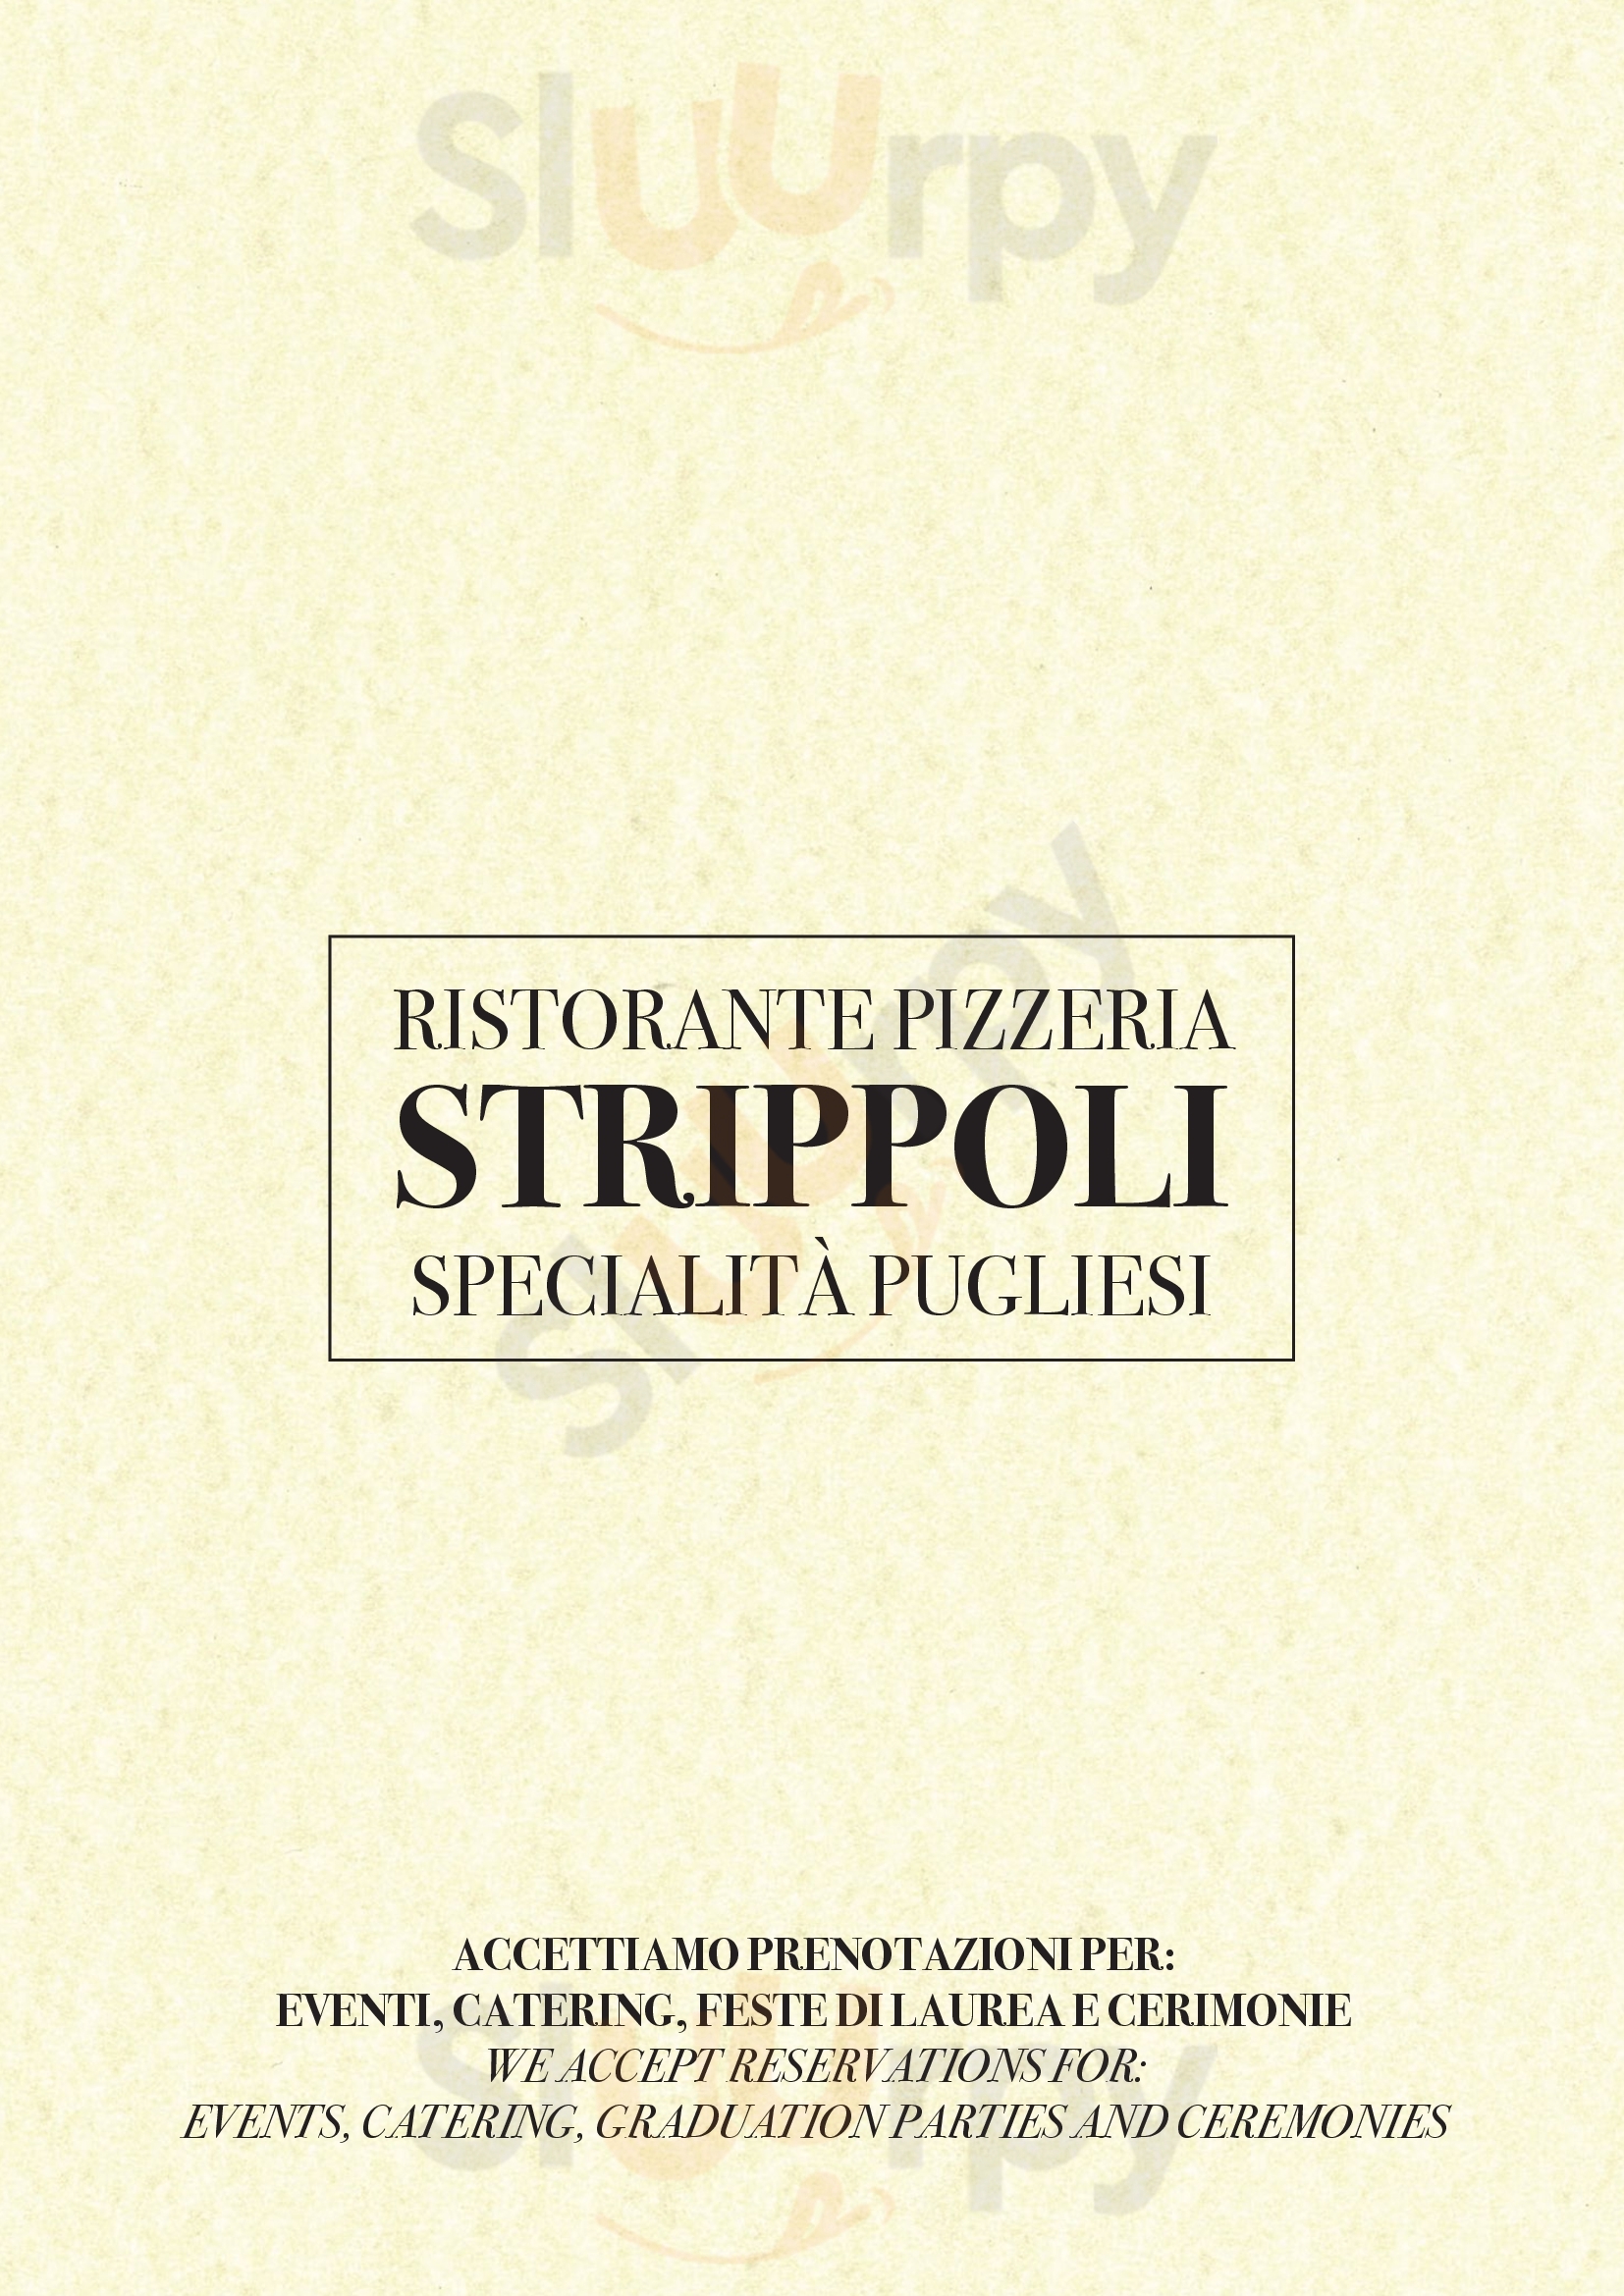 Ristorante Pizzeria Sant'ambrogio Milano menù 1 pagina